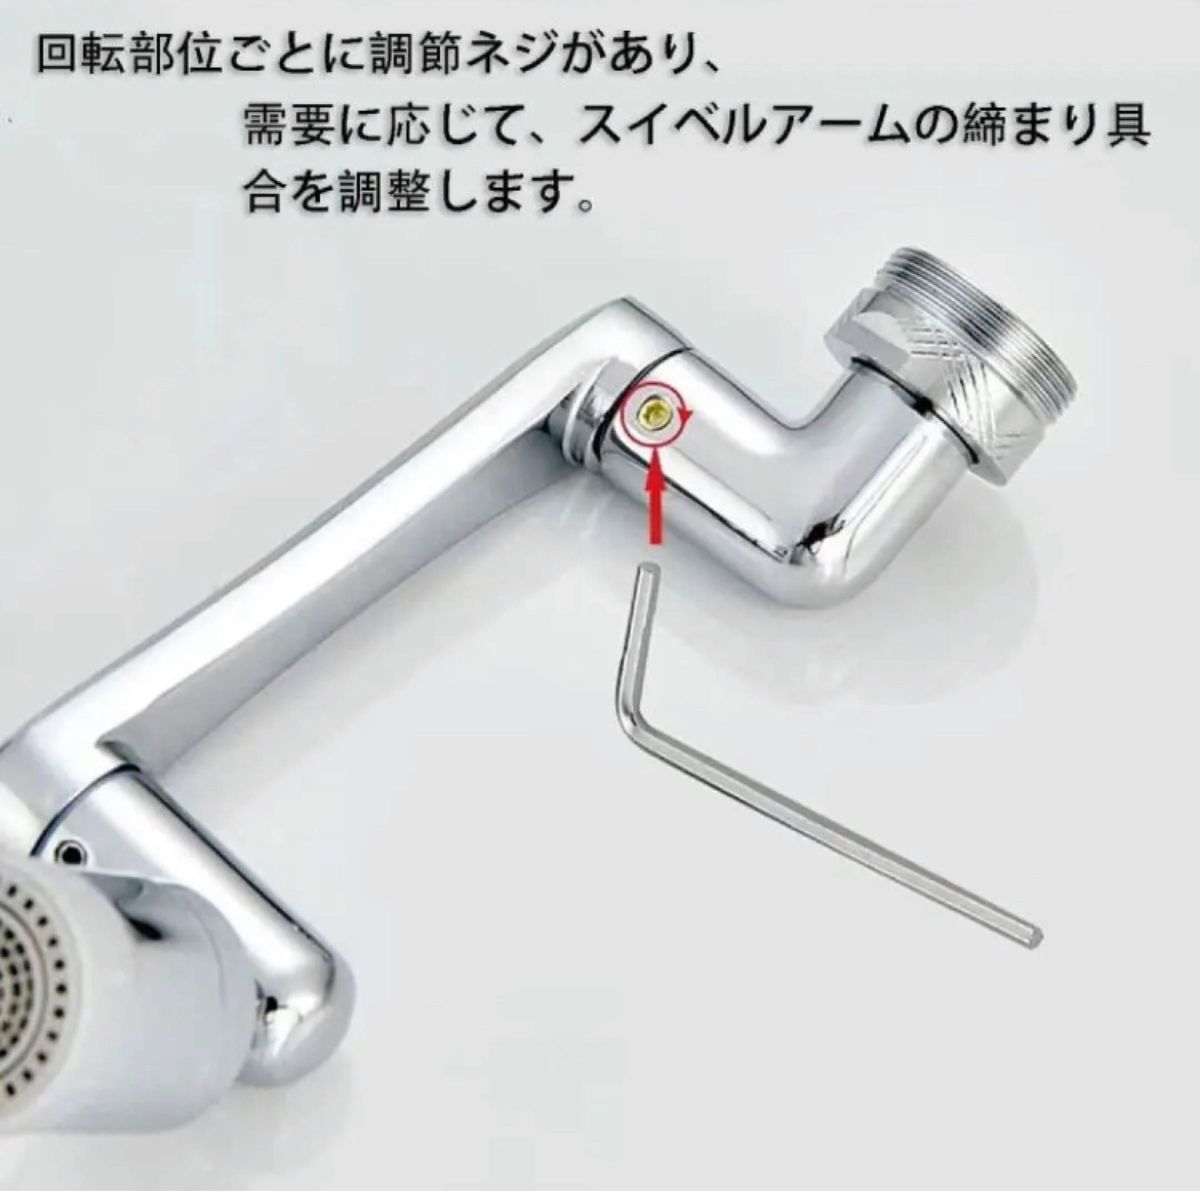 蛇口 シャワー 首振り 水栓ノズル 1080度回転 切り替え2段階モード多機能